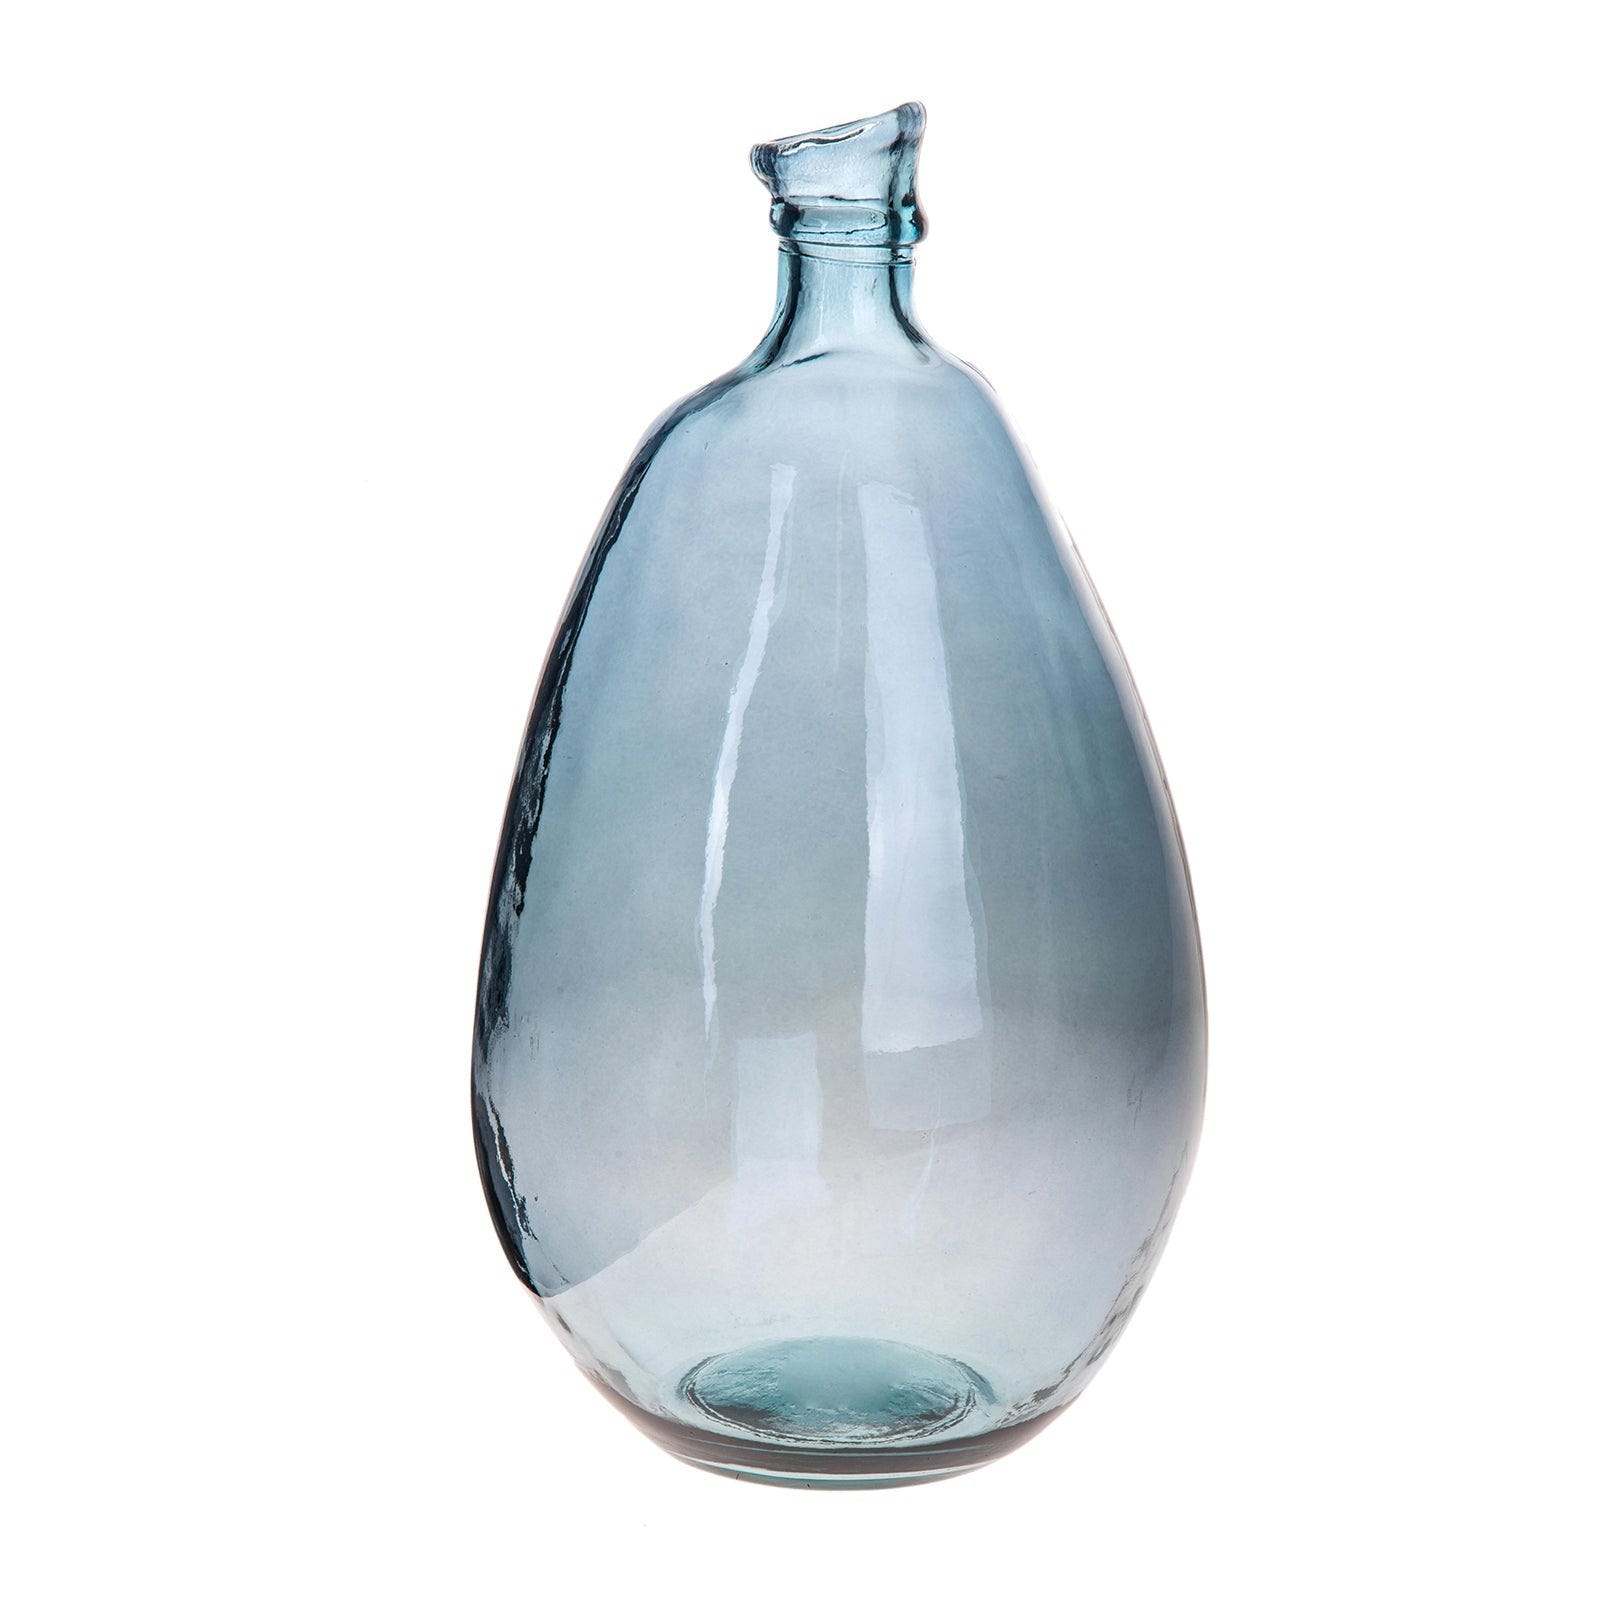 7 idee originali per riempire un vaso di vetro, Leroy Merlin